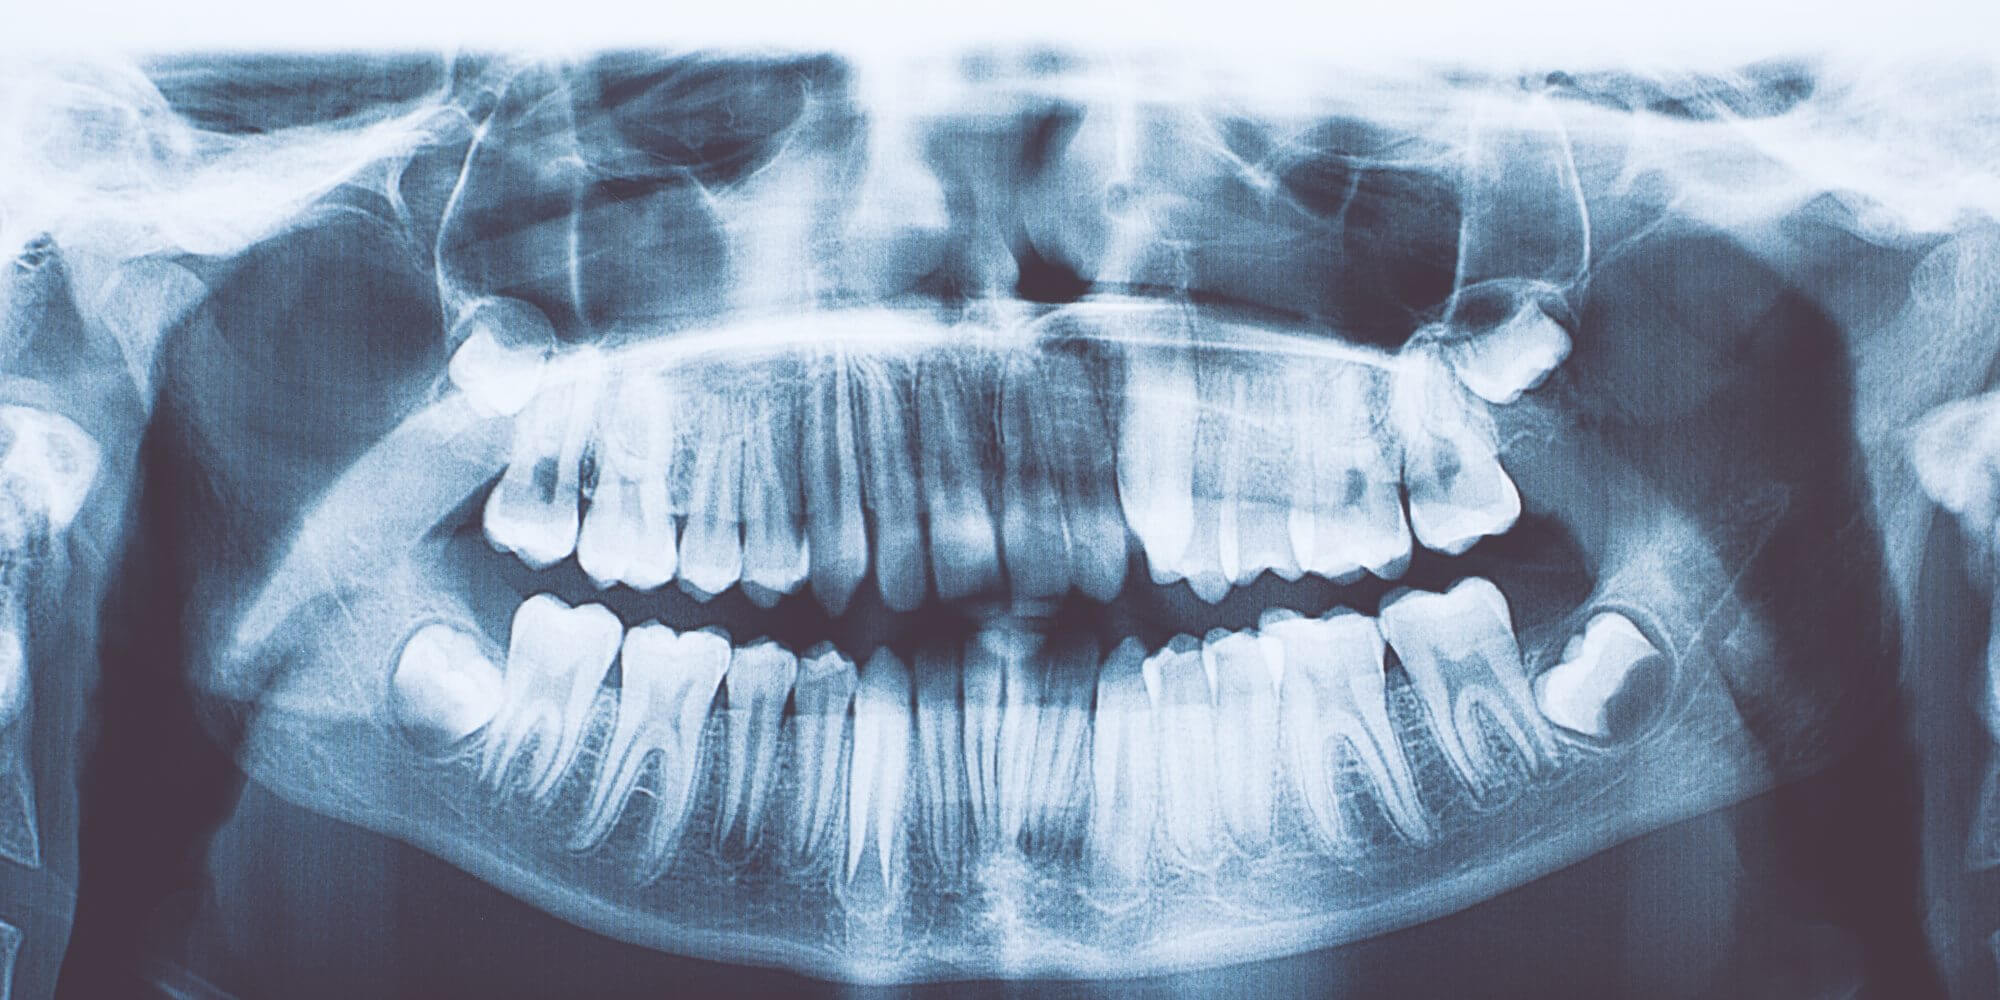 U indyjskiego chłopca znaleziono 526 zbędnych zębów. Co to za choroba?